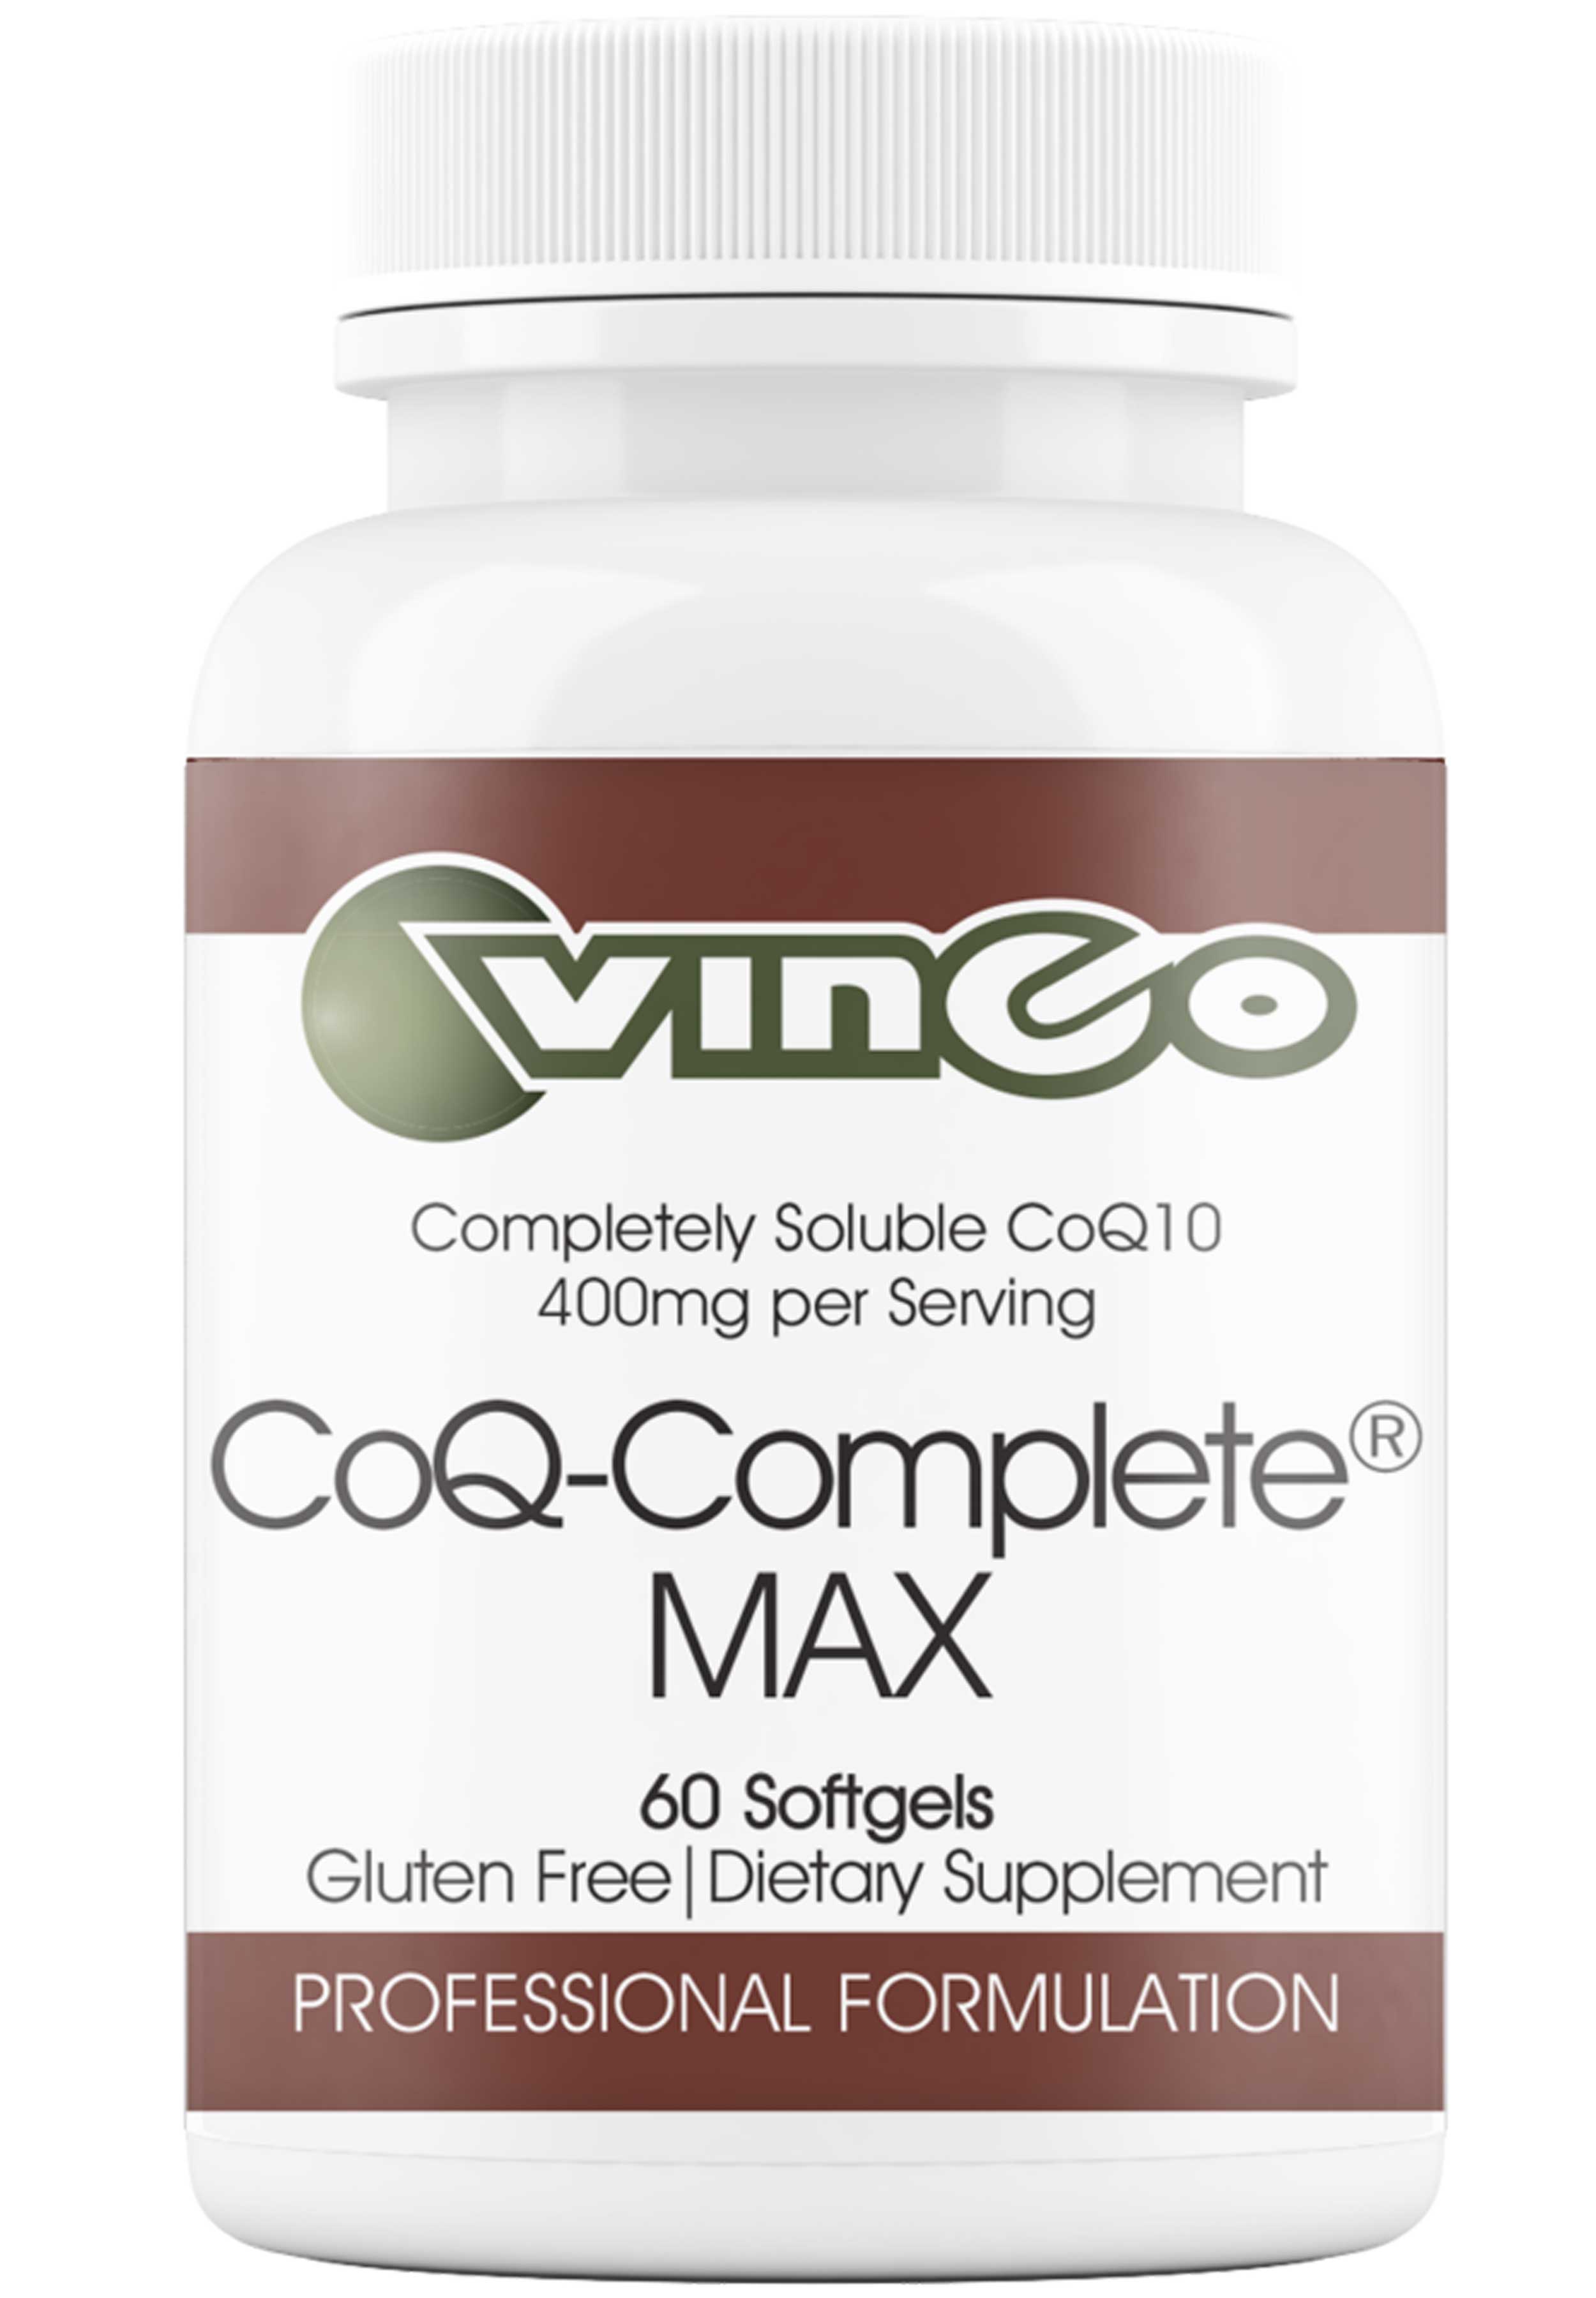 Vinco CoQ-Complete® MAX